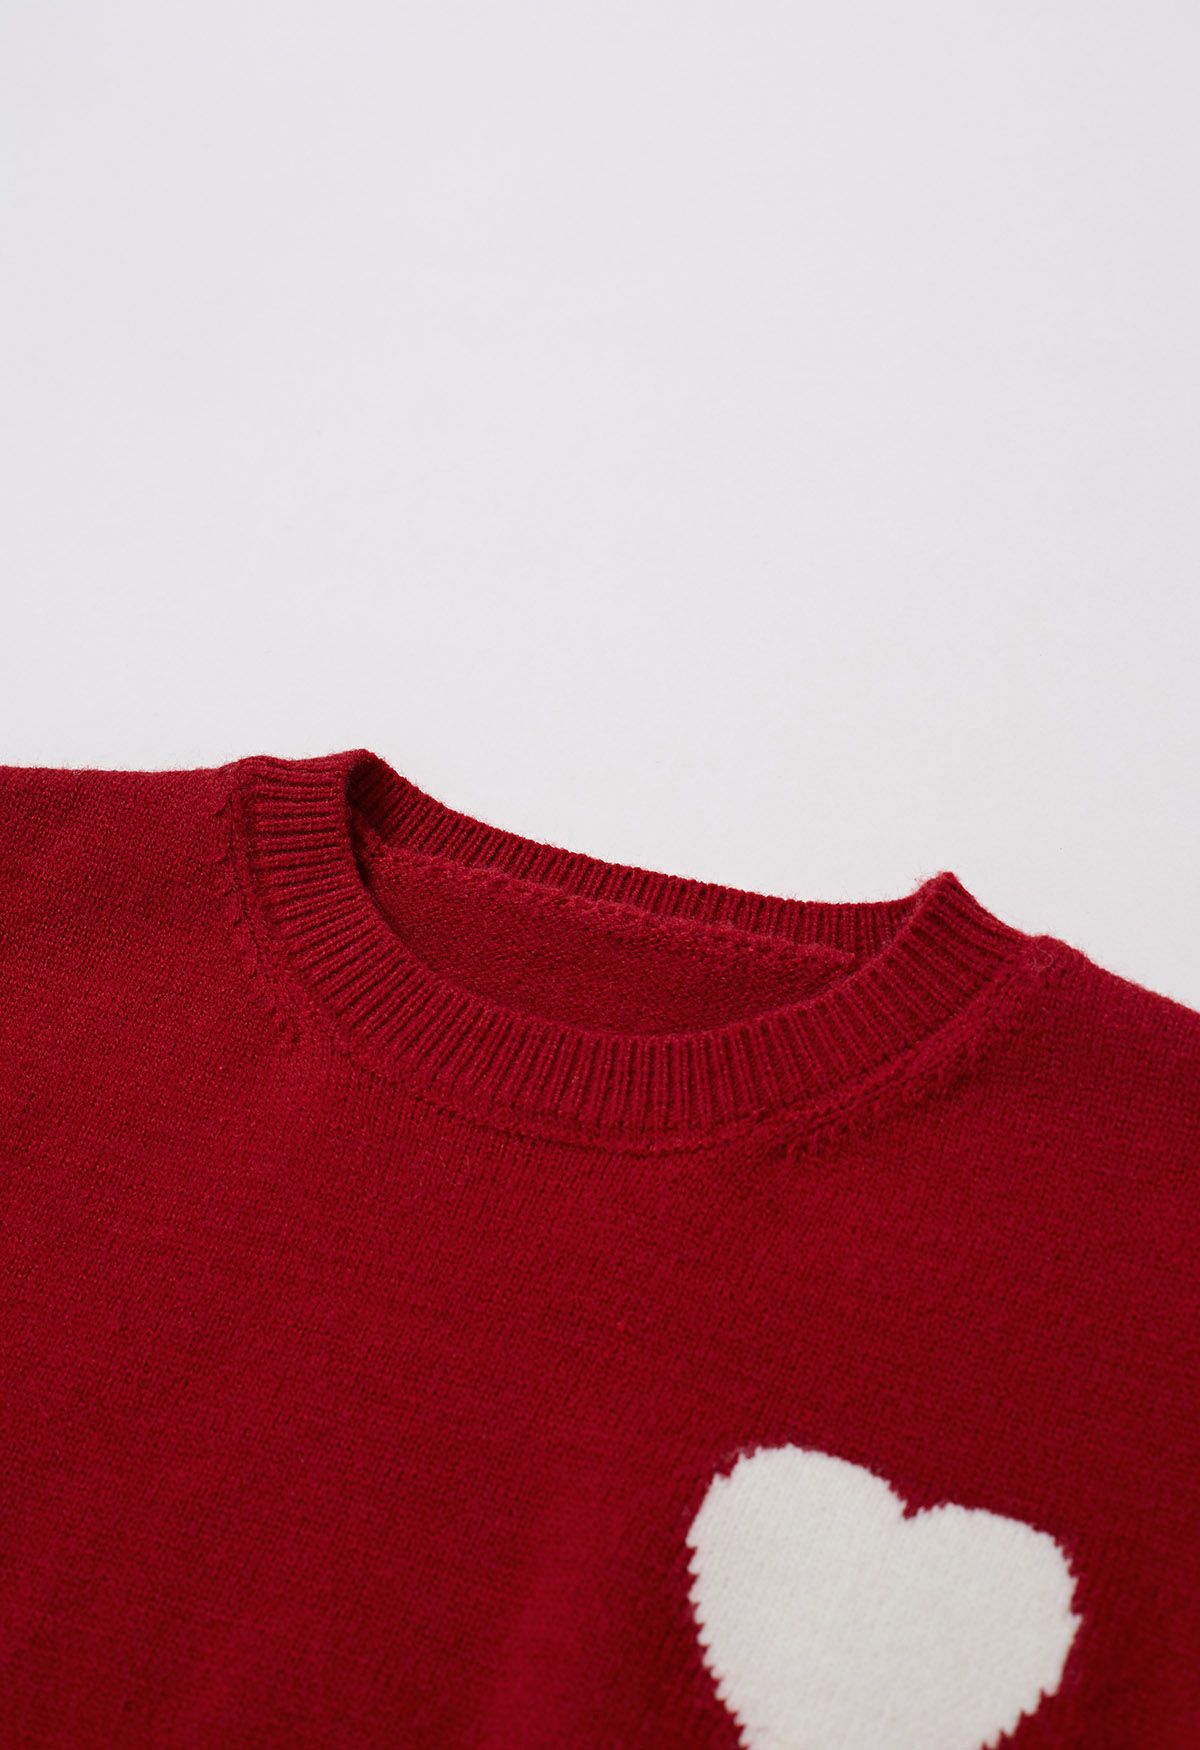 Sweet Heart Cozy Knit Sweater in Red